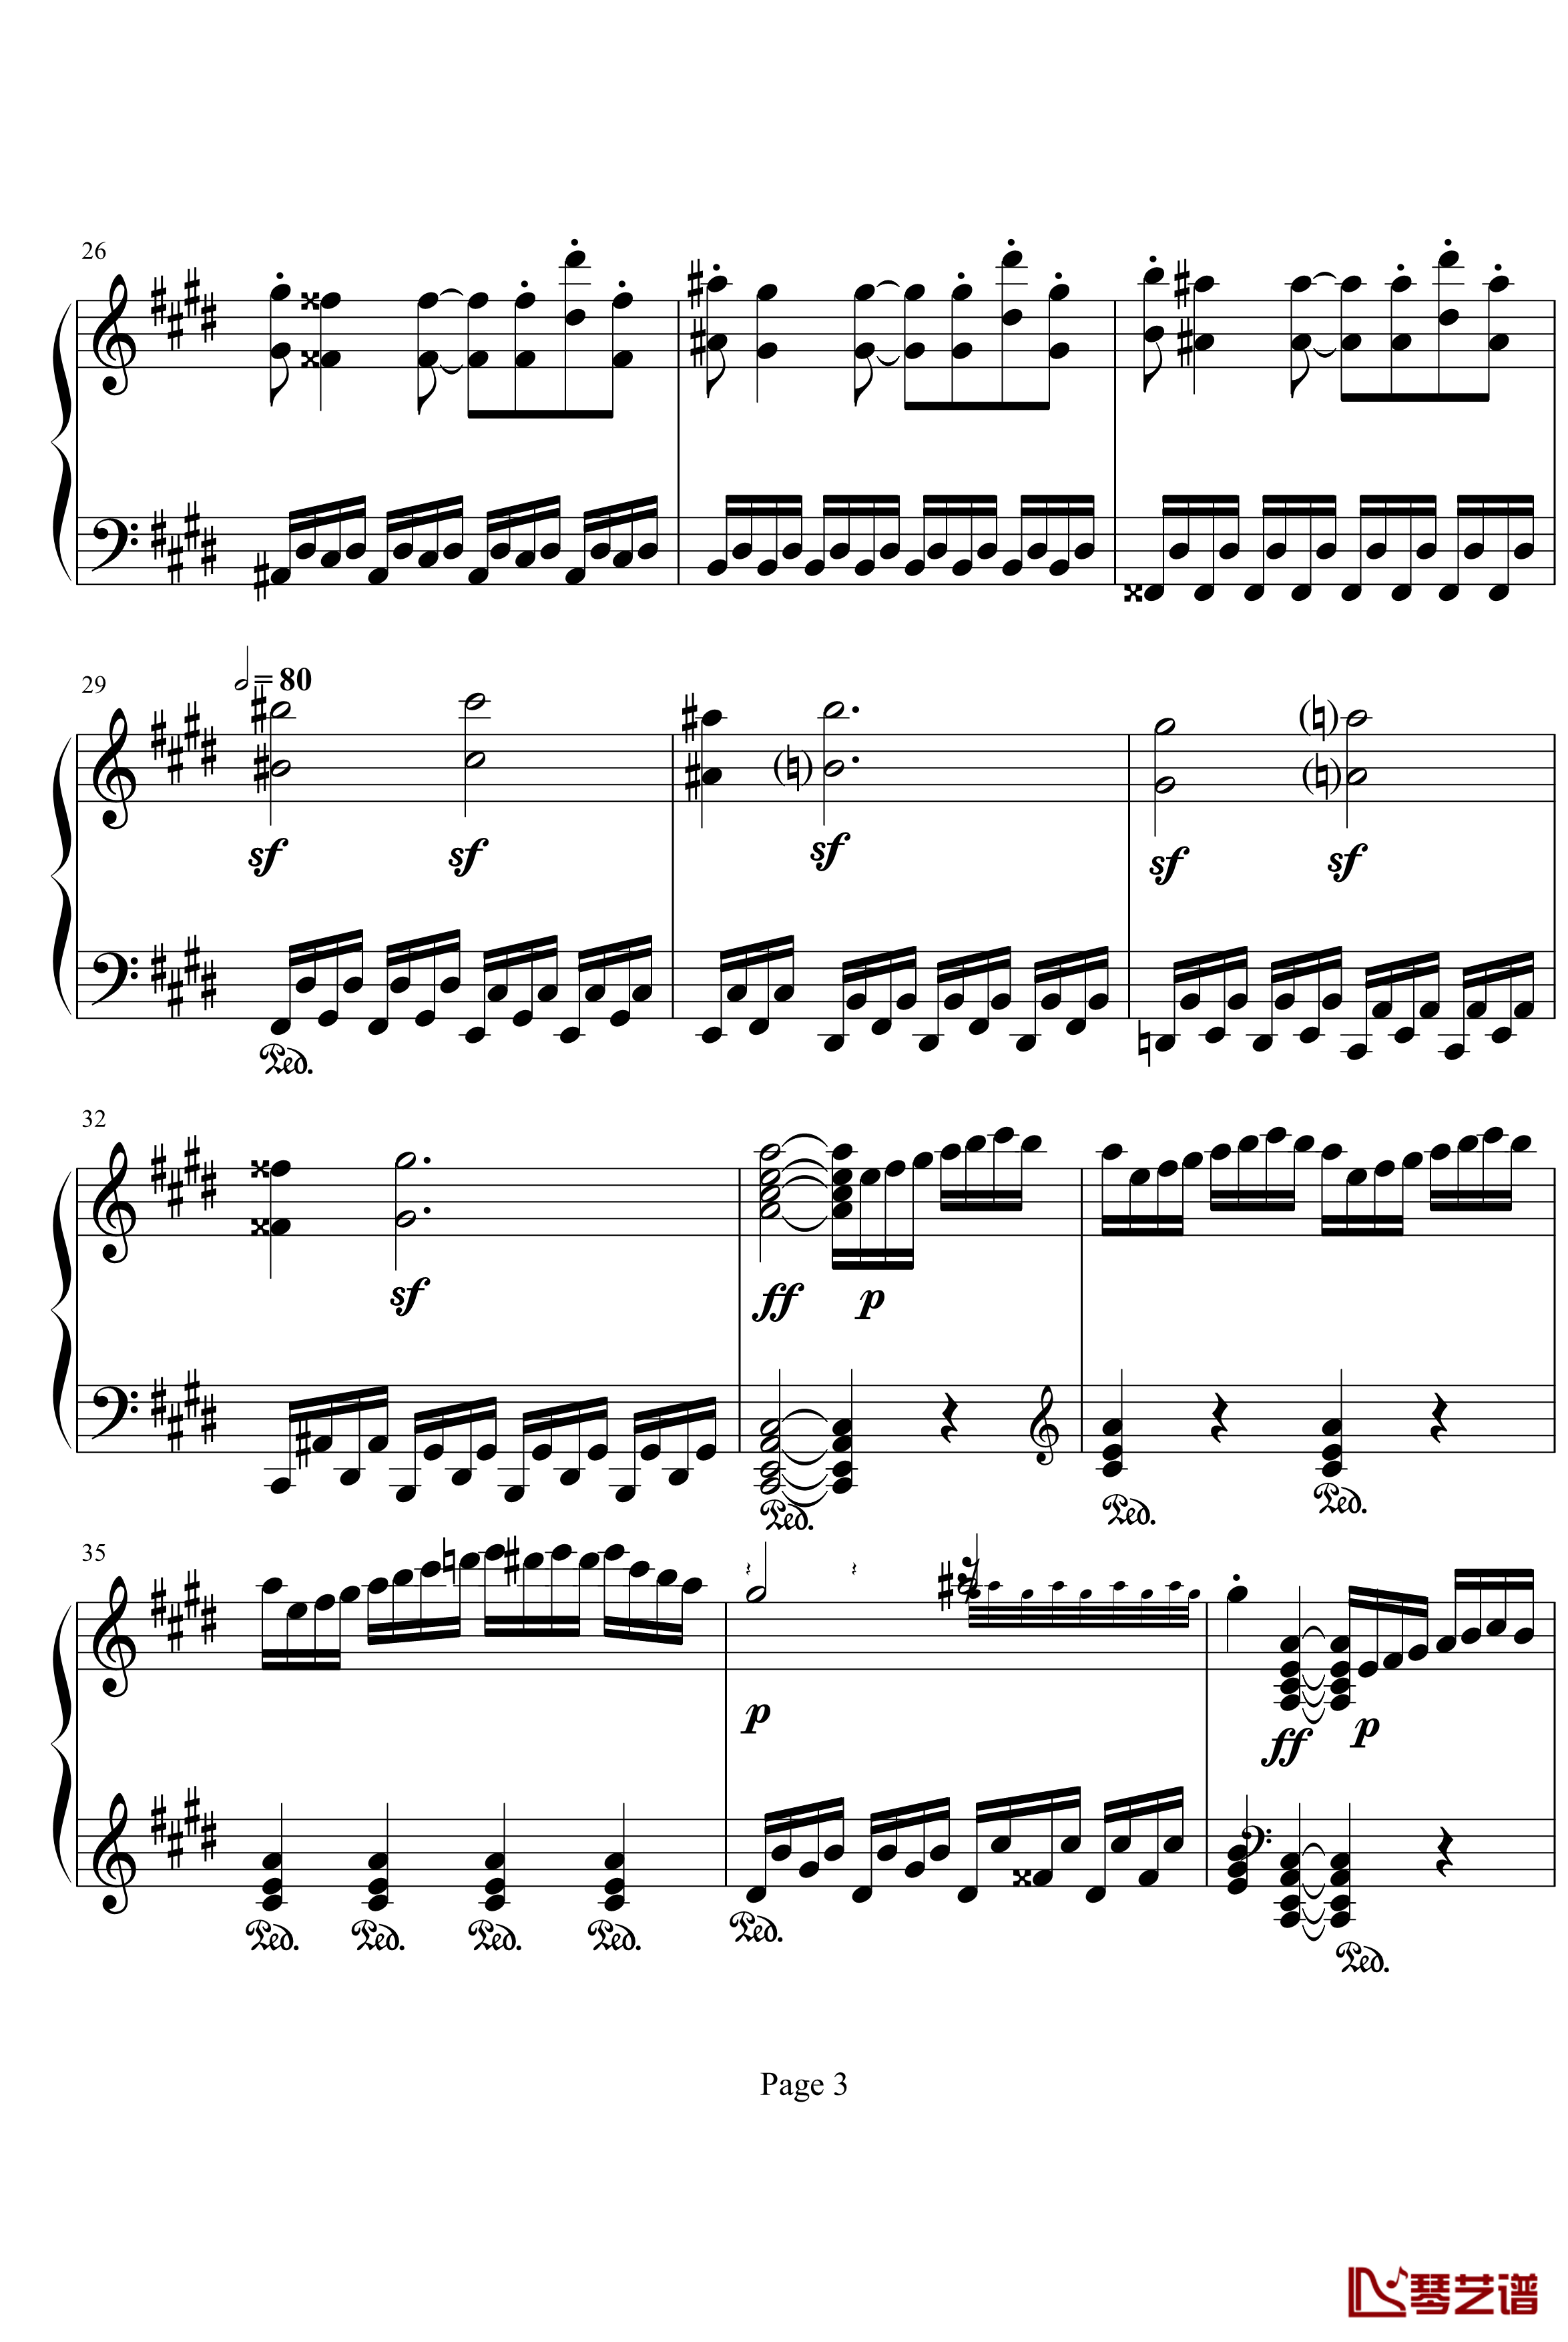 月光奏明曲钢琴谱-作品27之2-贝多芬-beethoven3